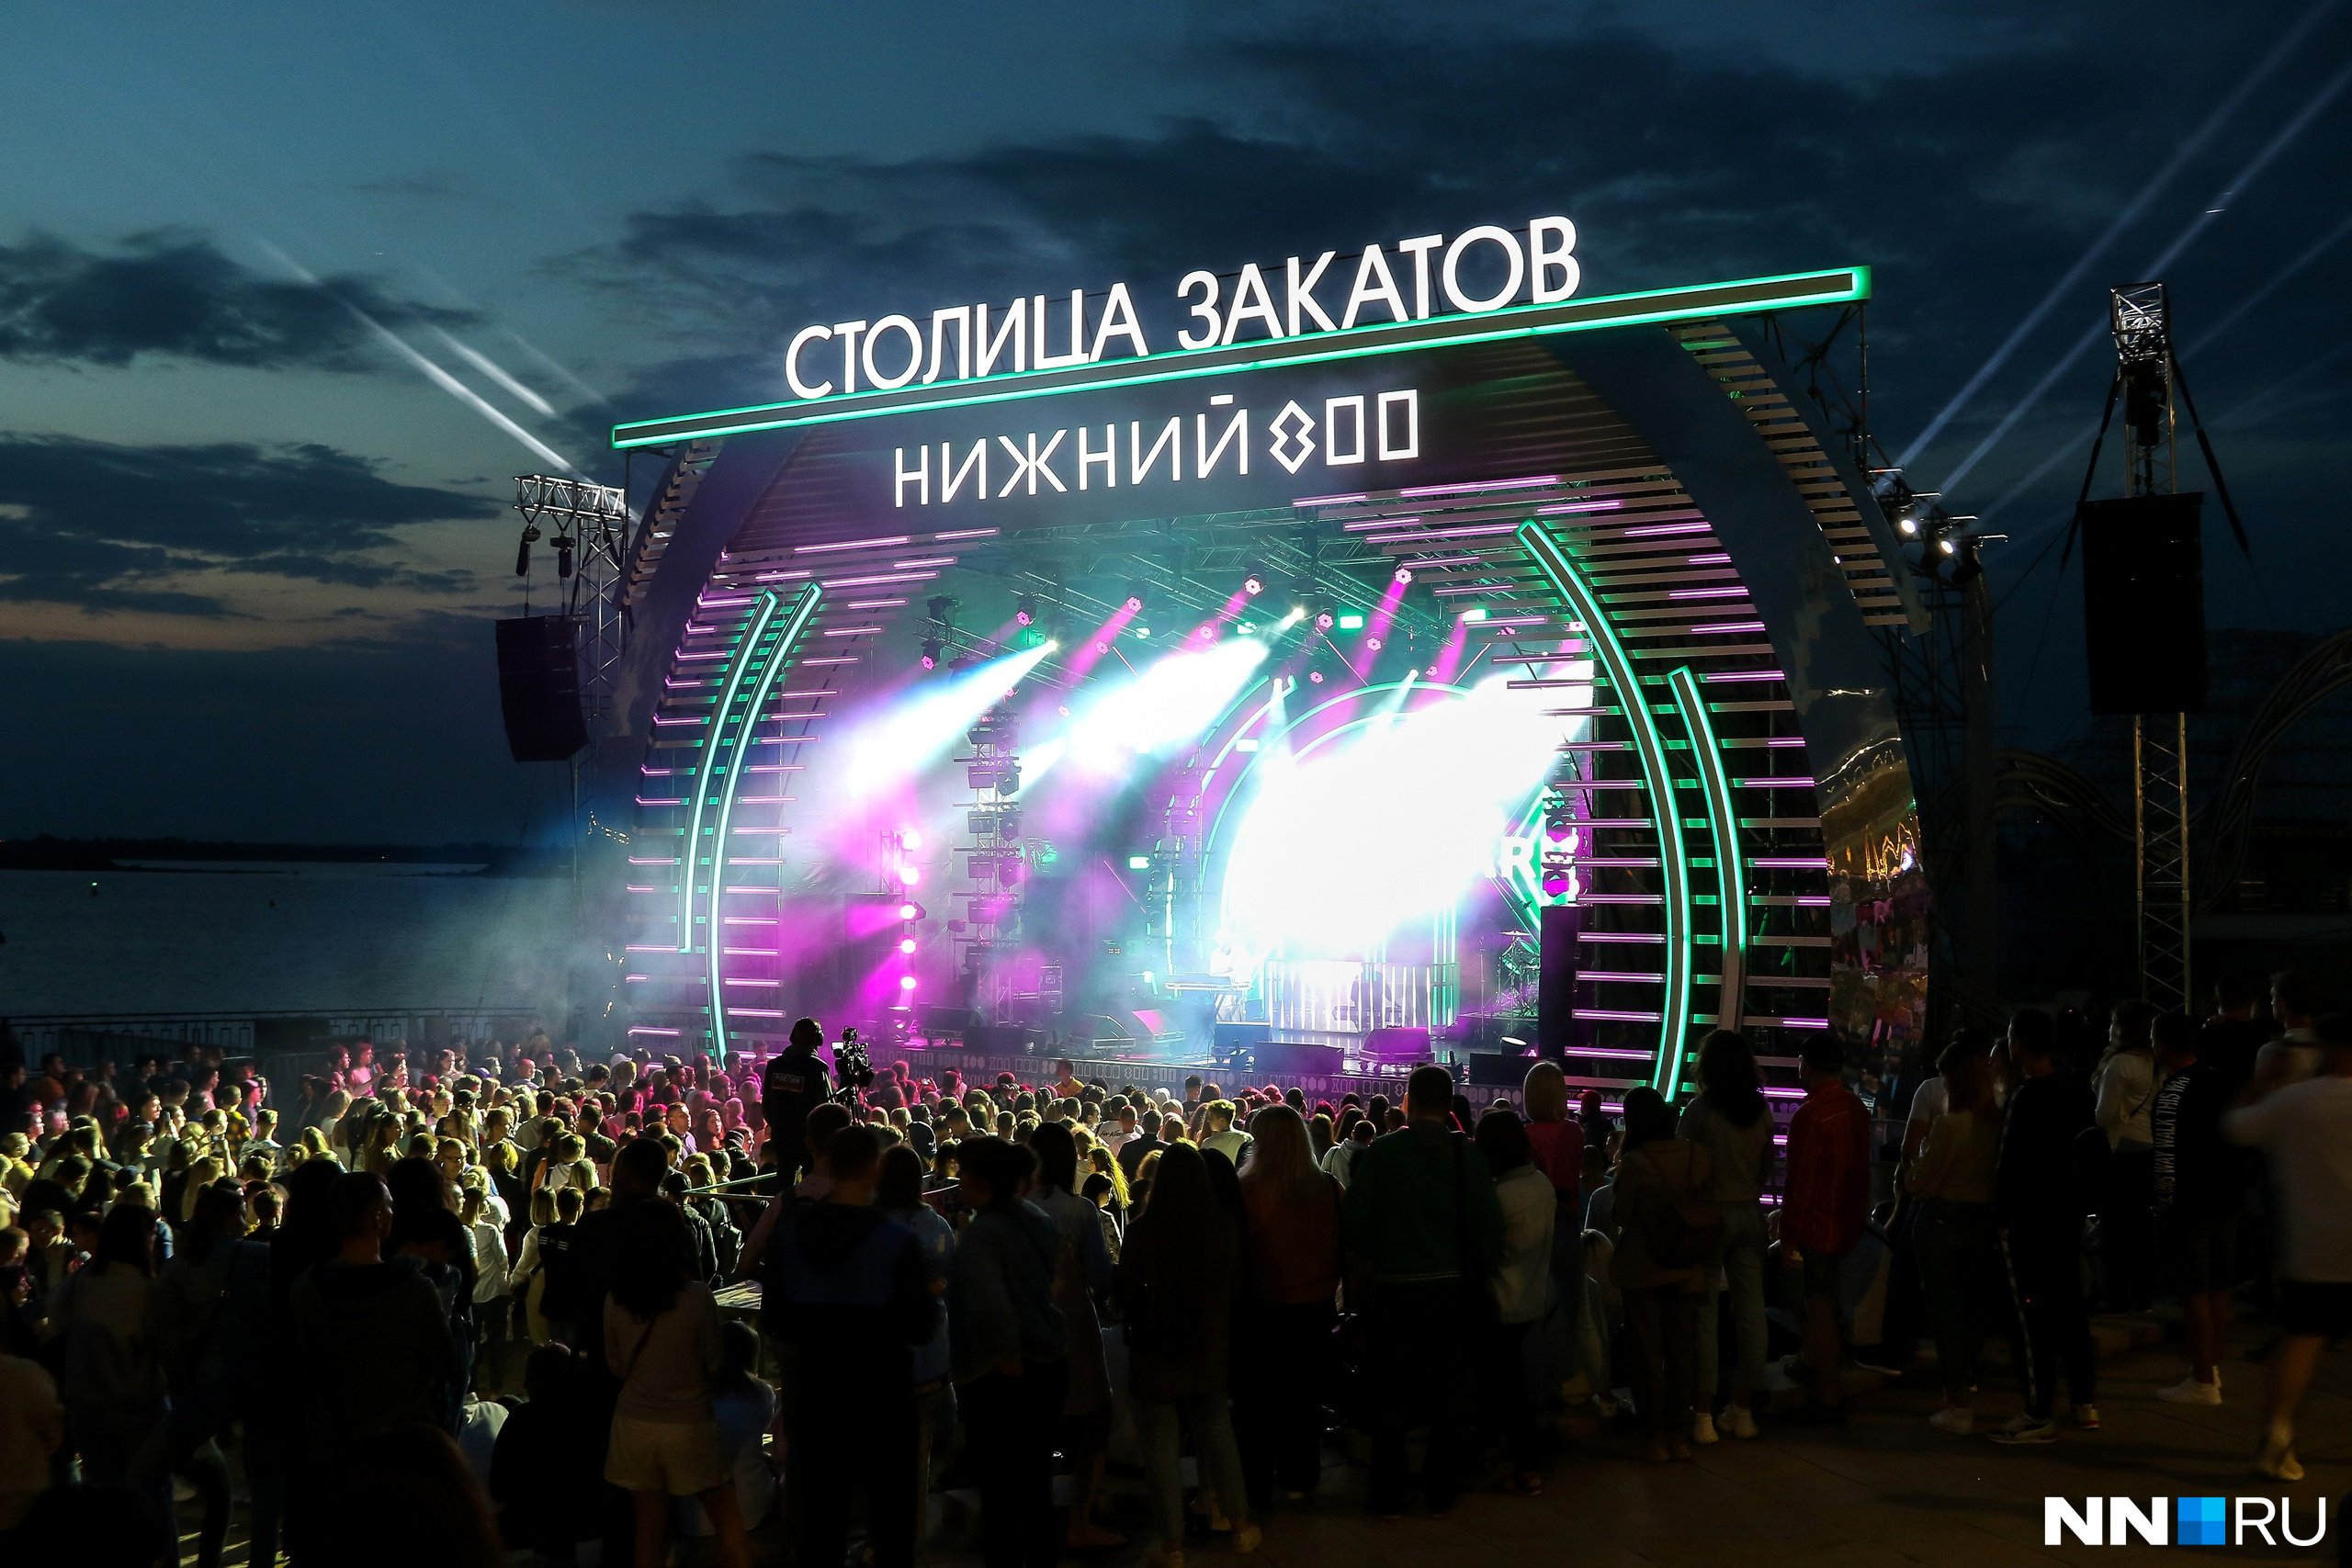 День кофе и Брамса. Программа фестиваля «Столица закатов» в Нижнем Новгороде на выходные